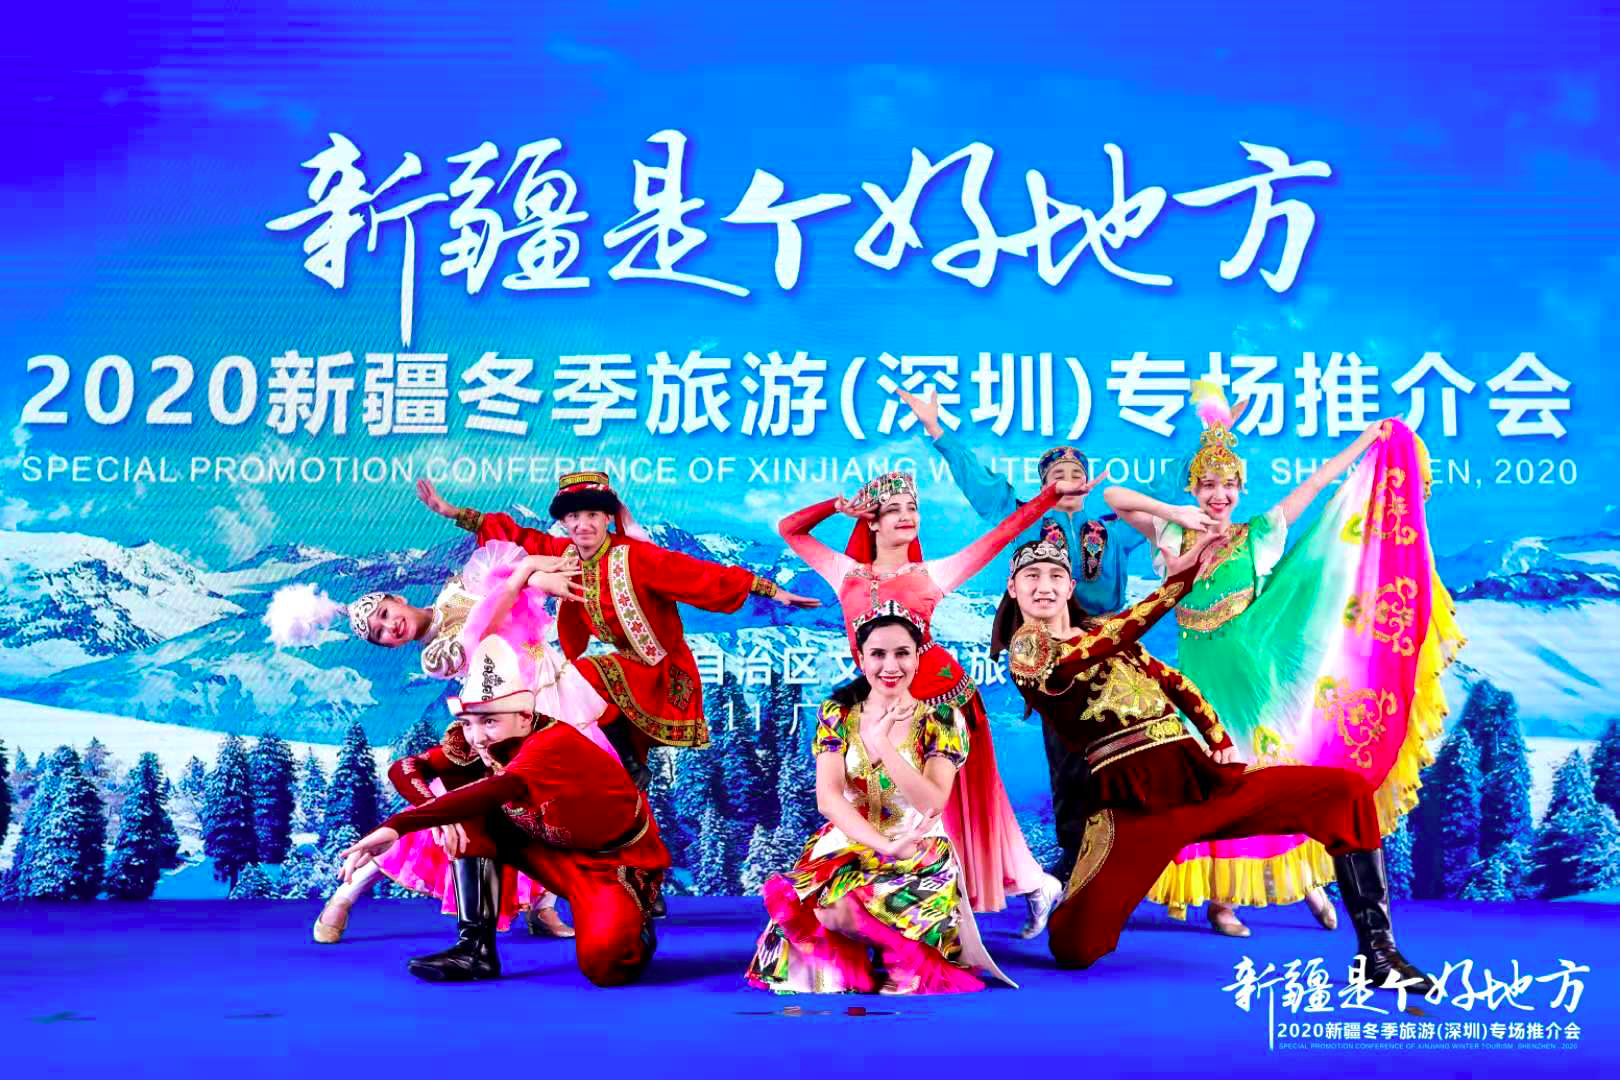 2020新疆冬季旅游专场推介活动在深圳福田举行